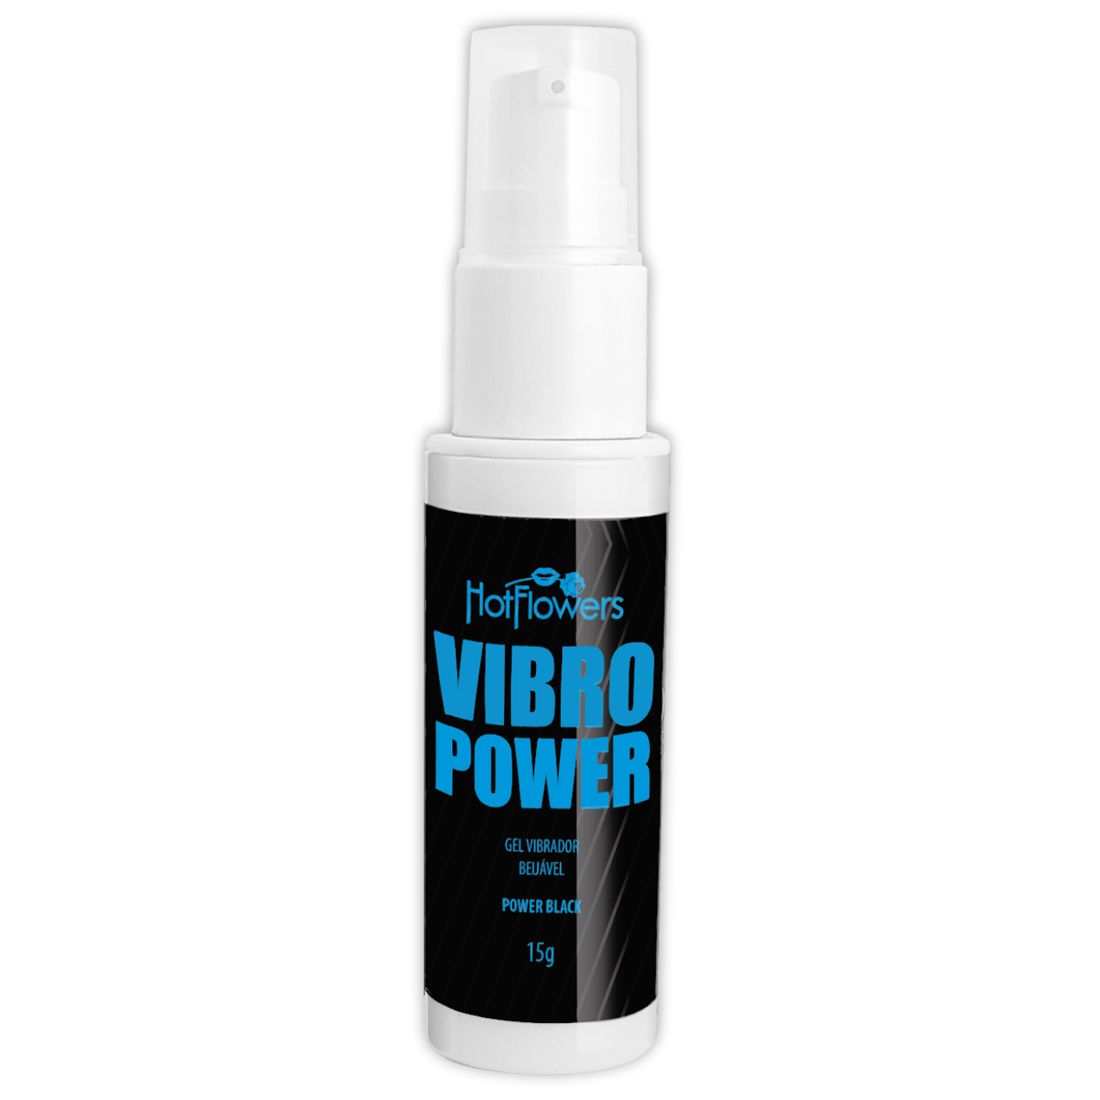 Жидкий вибратор Vibro Power со вкусом энергетика  - яркий и насыщенный гель, повышающий температуру отношений, приятный для поцелуев и обладающий восхитительным вкусом, который делает интимный момент еще более увлекательным. Можно использовать при поцелуях и оральном сексе.